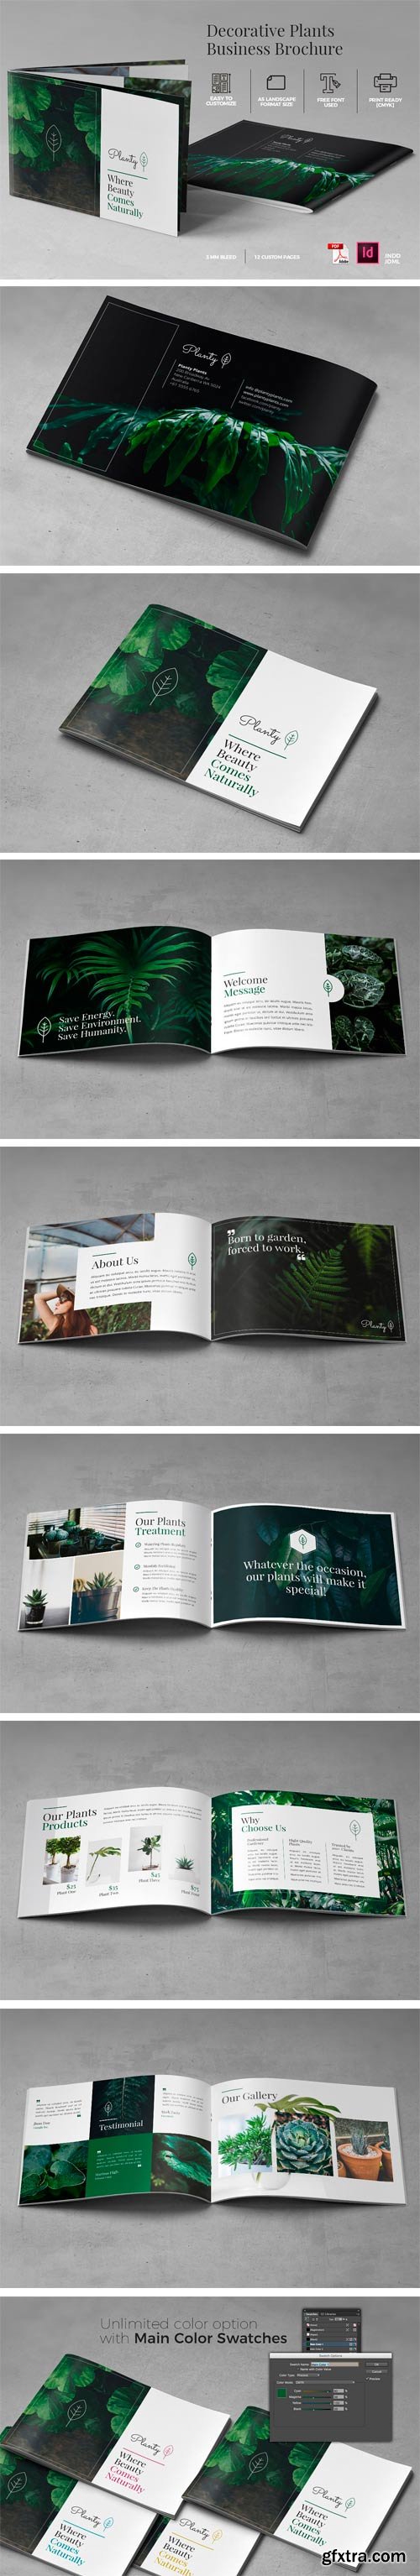 CM 1360741 - A5 Decorative Plants Brochure